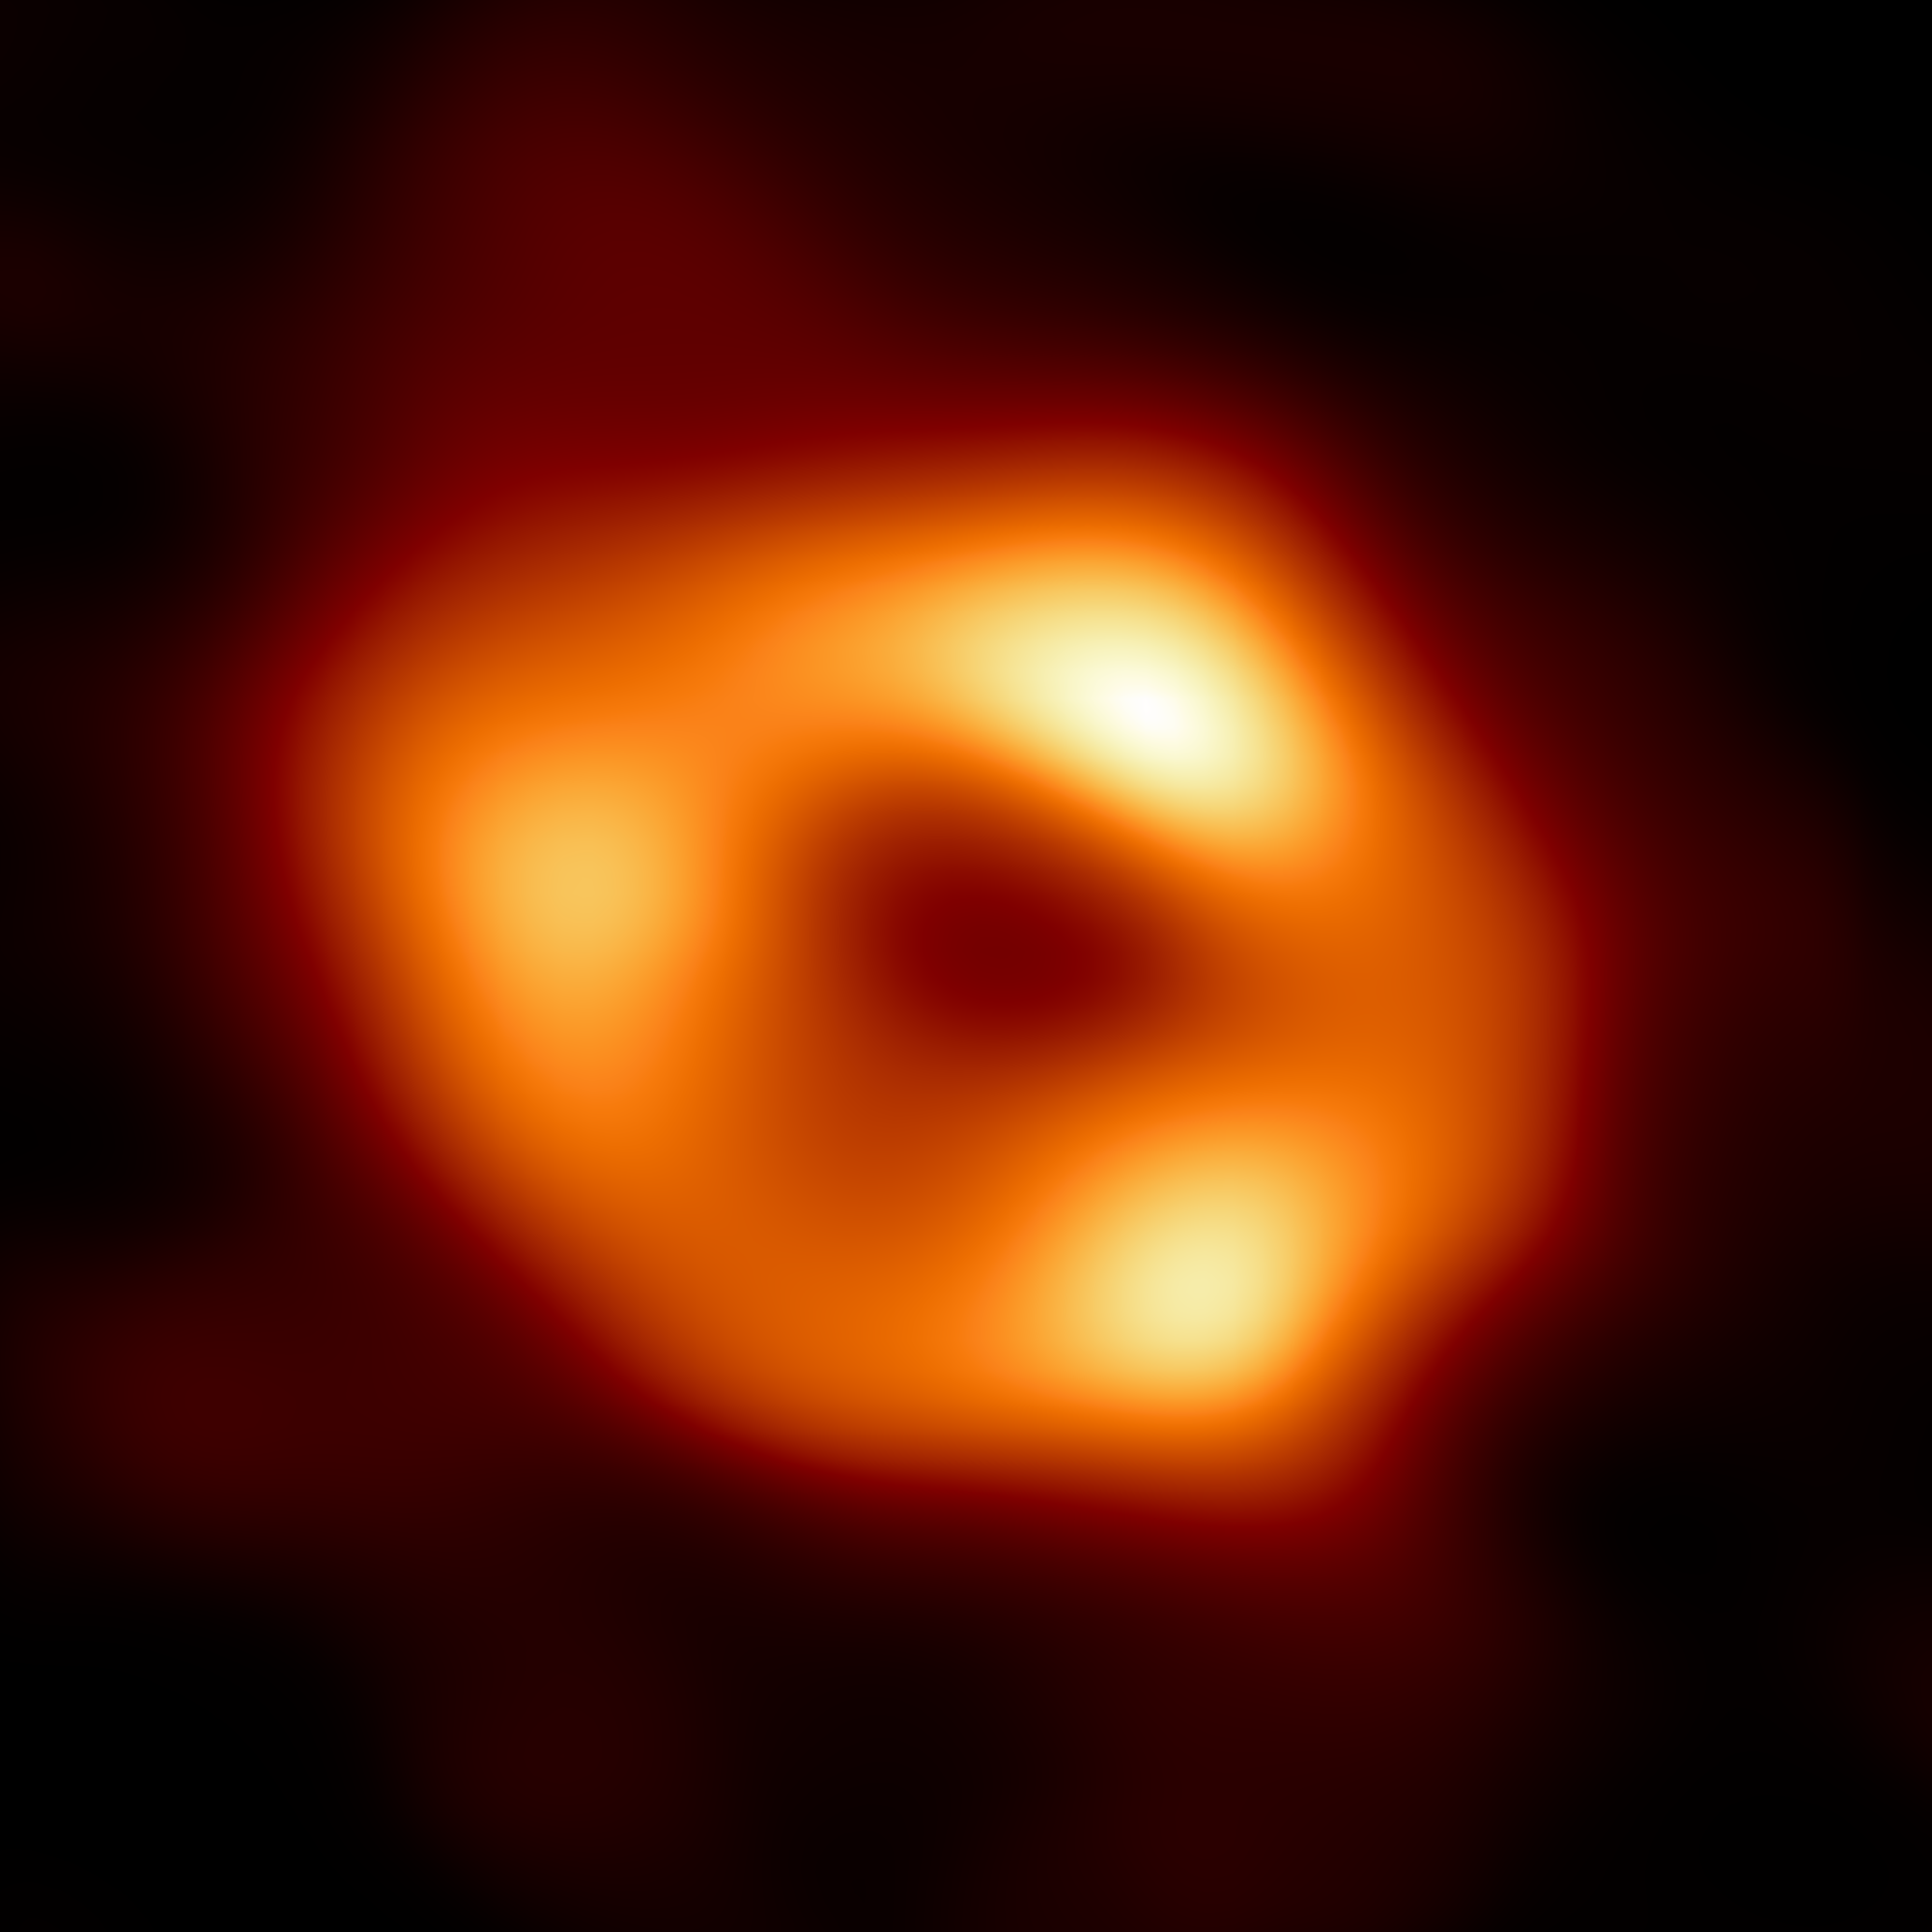 První snímek supermasivní černé díry Sgr A* v centru naší Galaxie. Je výsledkem propojení osmi stávajících radioteleskopů na celé planetě do jednoho virtuálního dalekohledu 